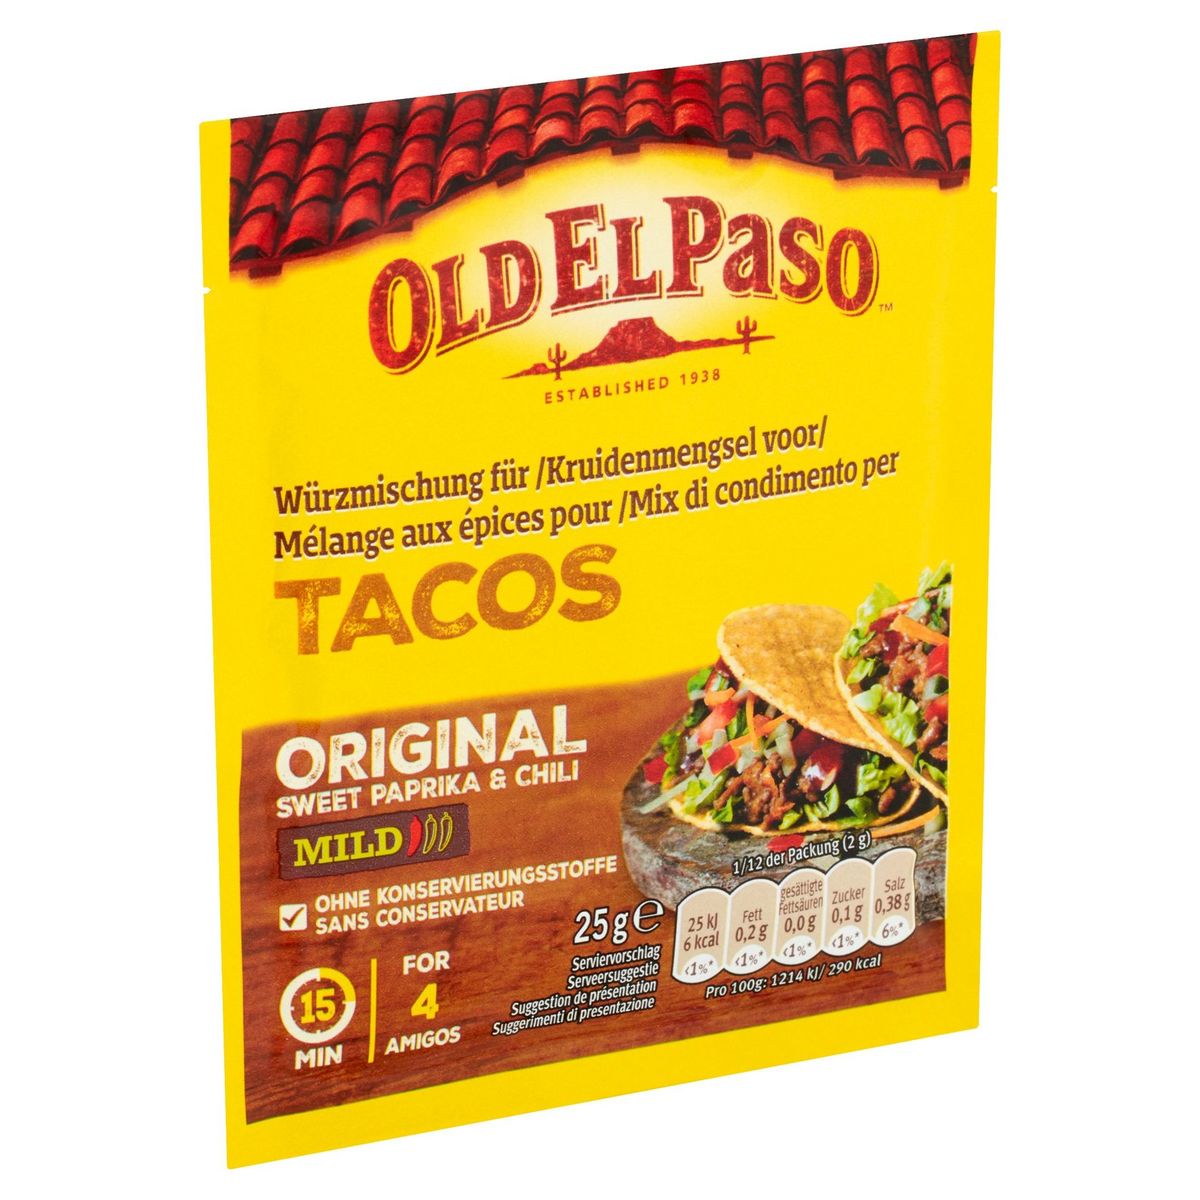 Old El Paso Mélange Épices Tacos Sweet Paprika & Chili Mild 25 g